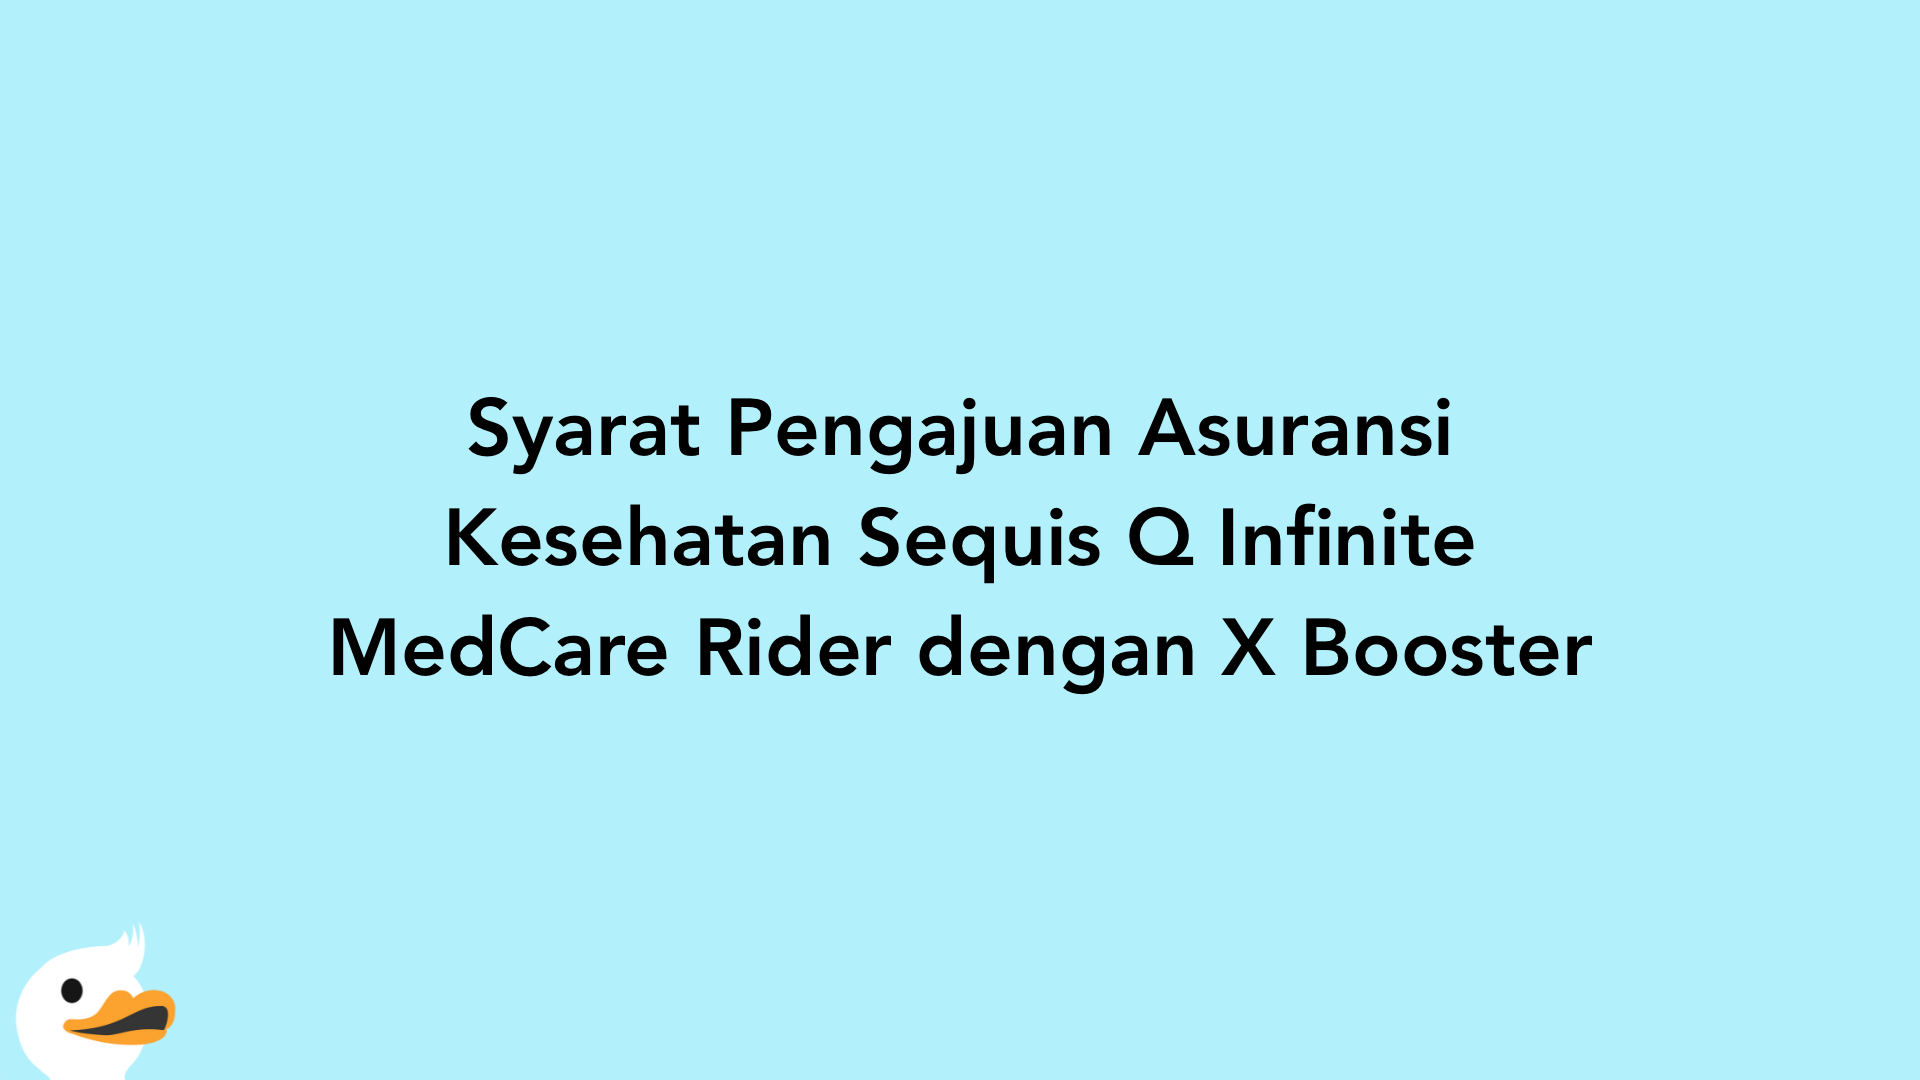 Syarat Pengajuan Asuransi Kesehatan Sequis Q Infinite MedCare Rider dengan X Booster